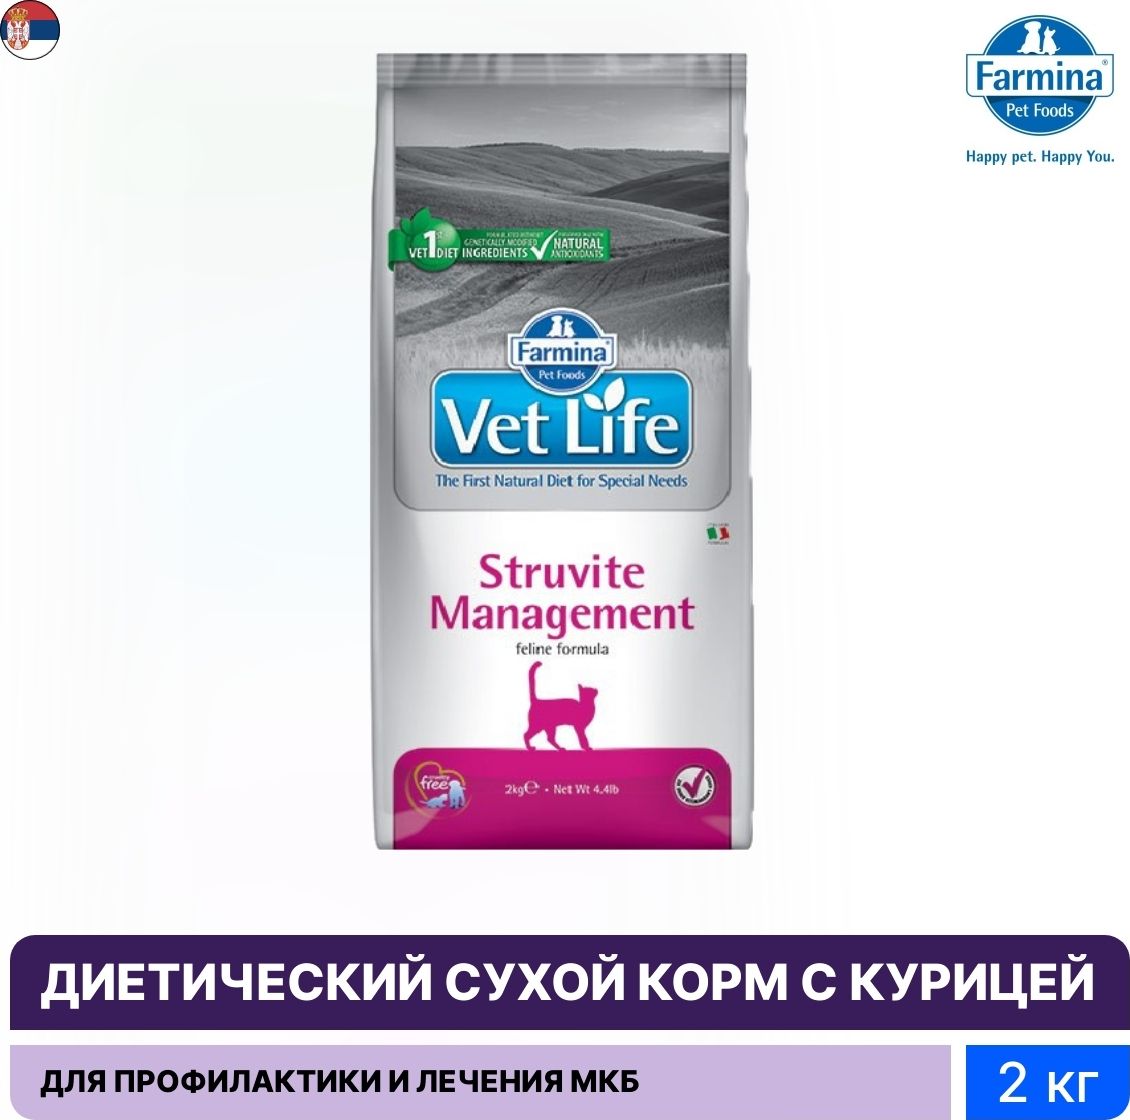 Влажный корм farmina vet life. Vet Life Struvite Management для кошек. Farmina Struvite Management. Фармина Струвит. Farmina vet Life контроль веса.